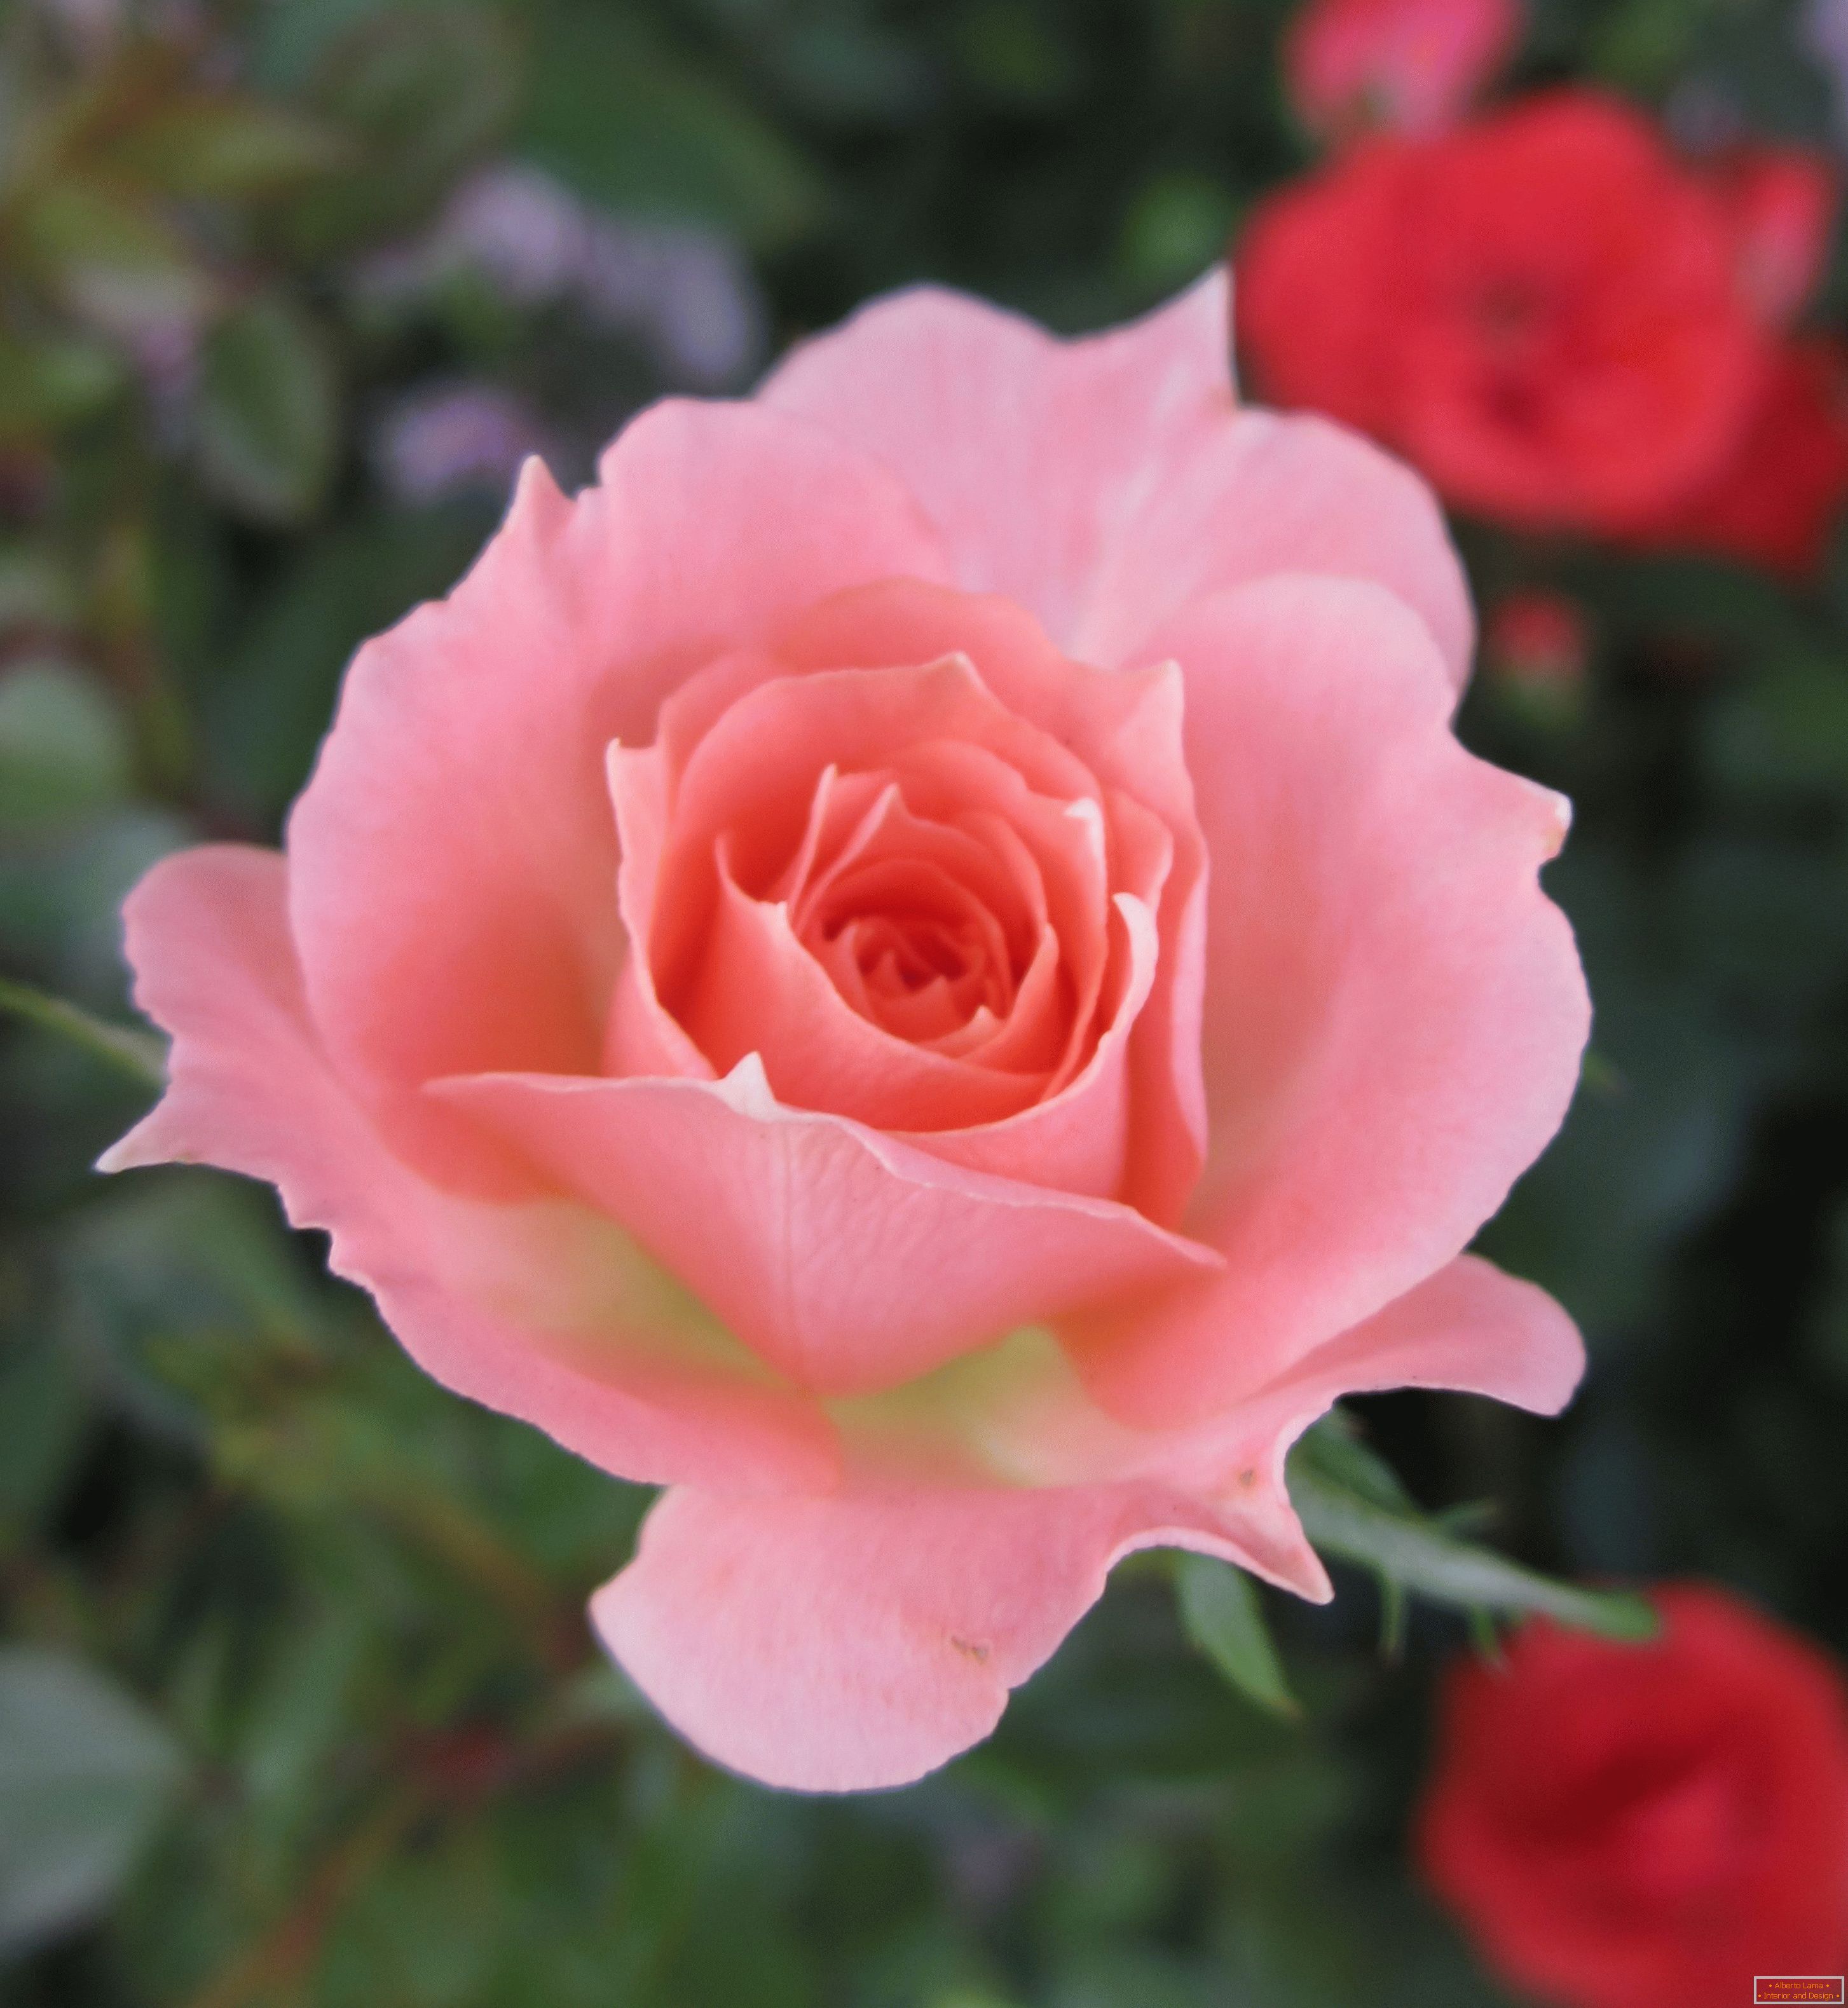 Rosa de un tono rosado en un ambiente de flores rojas